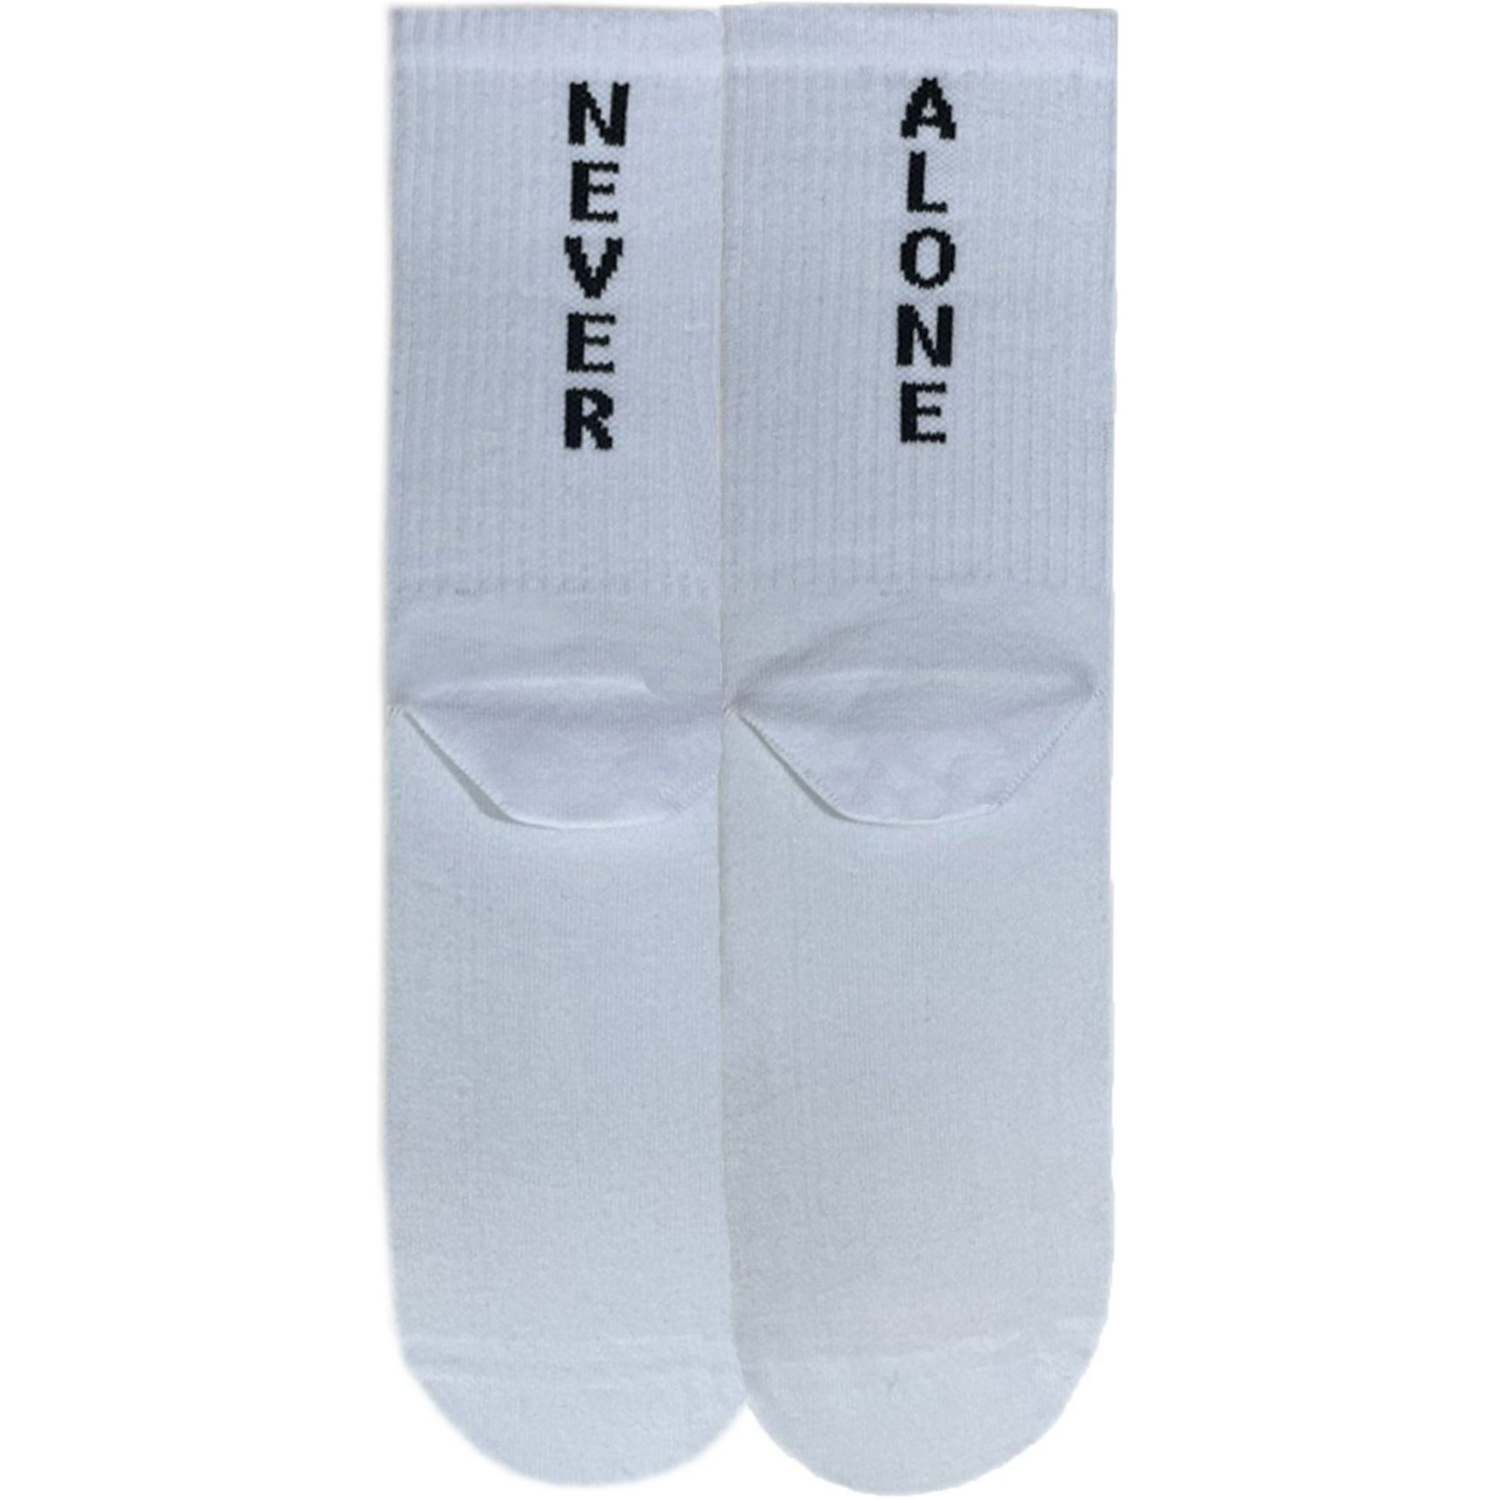 Шкарпетки чоловічі Premier Socks 42-43 1 пара білі з принтом (4820163317922)фото